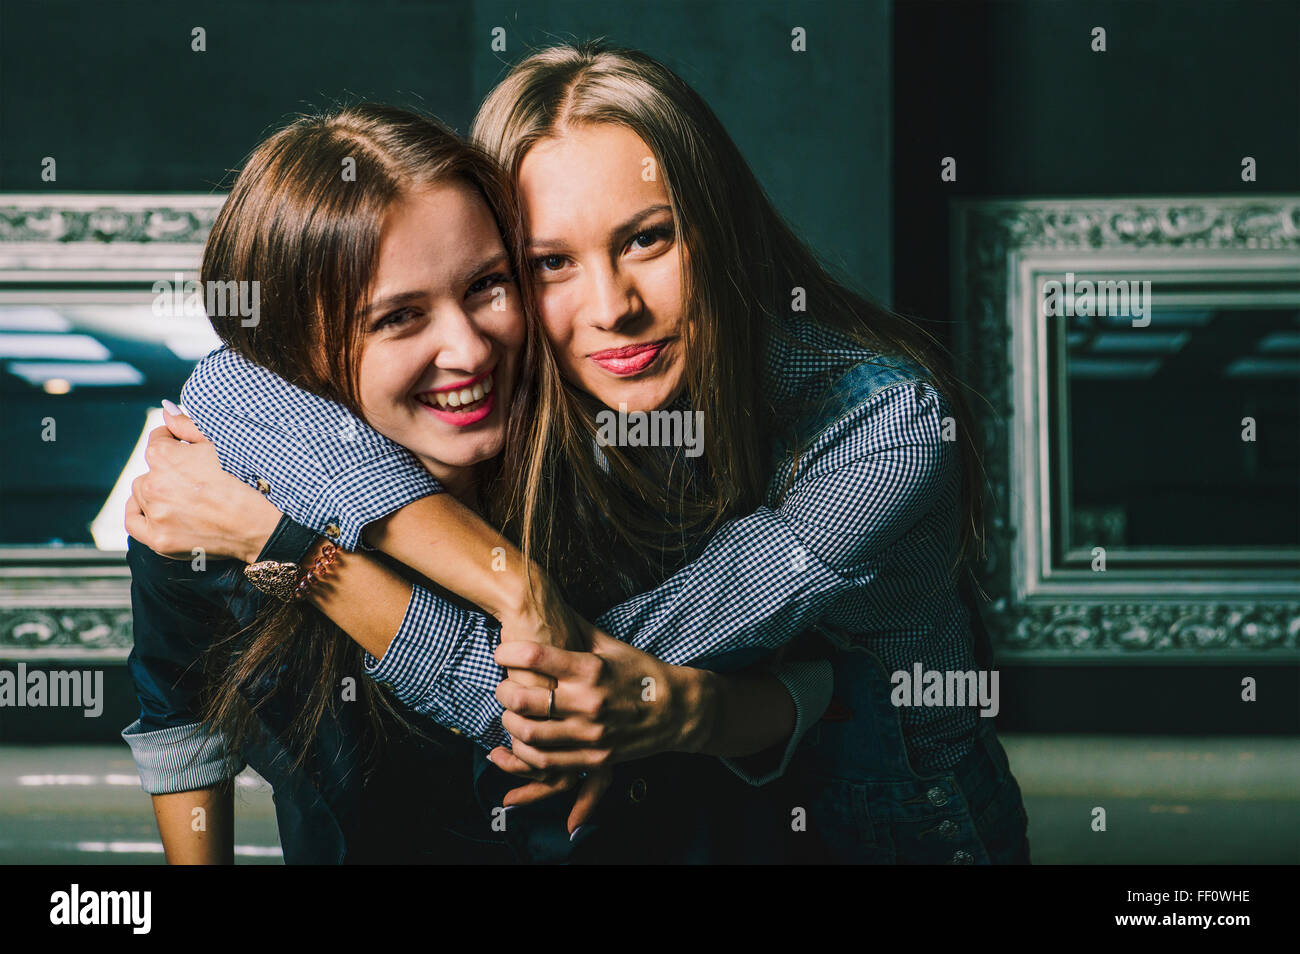 Women hugging in restaurant Stock Photo